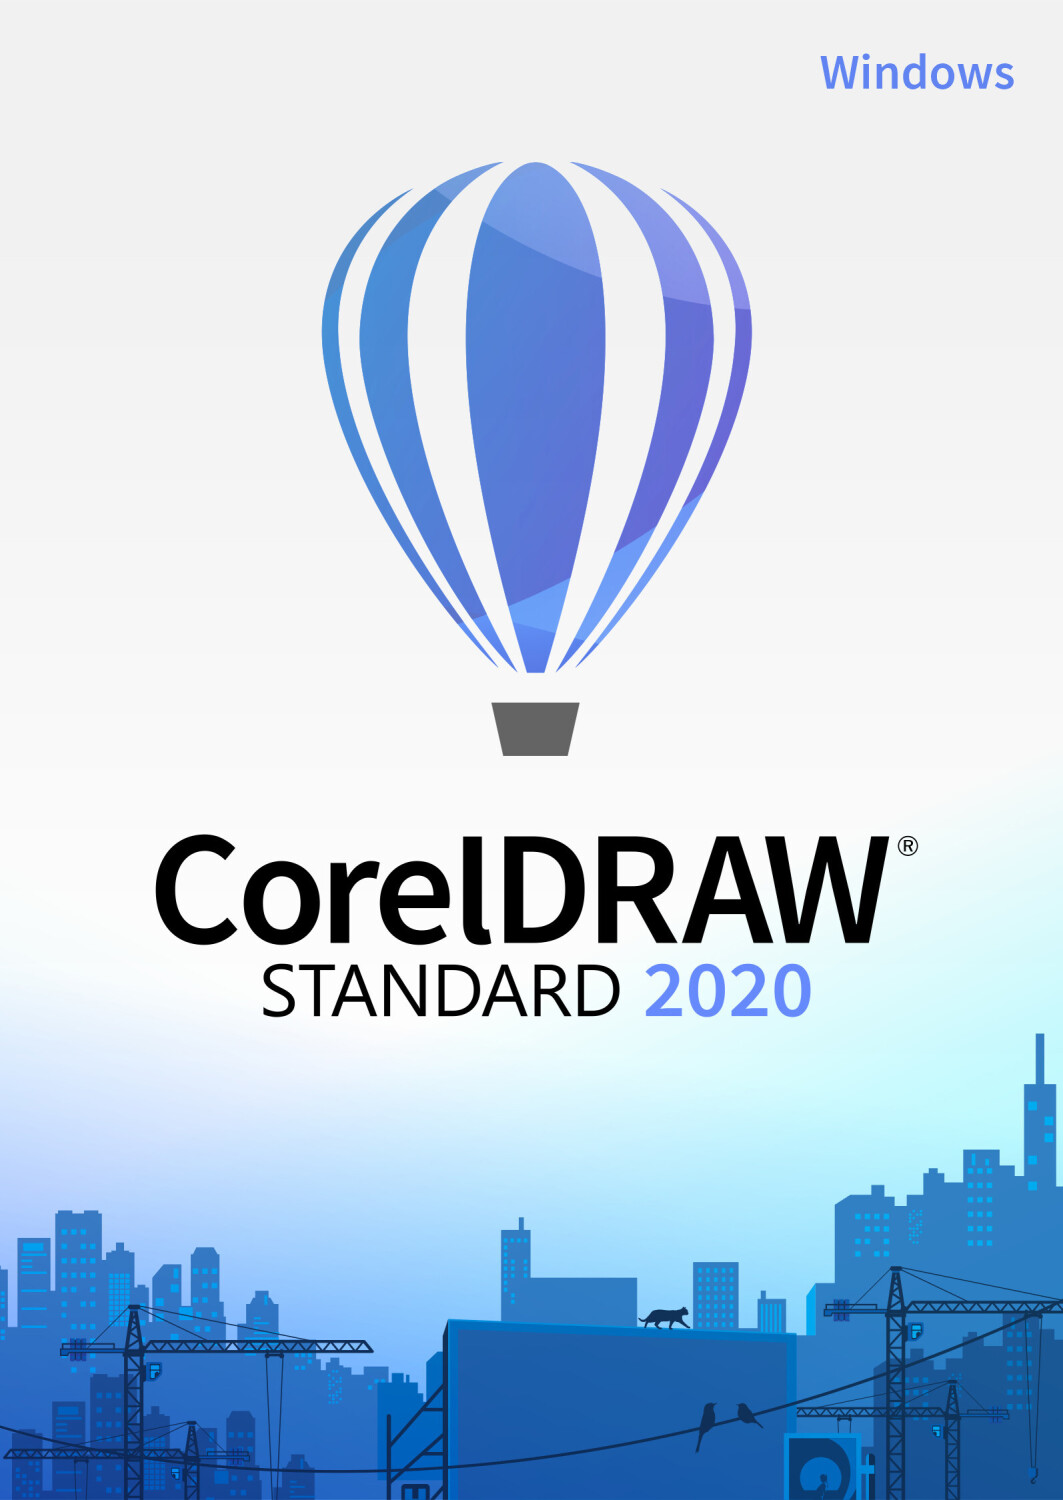 corel paintshop pro 2020 download